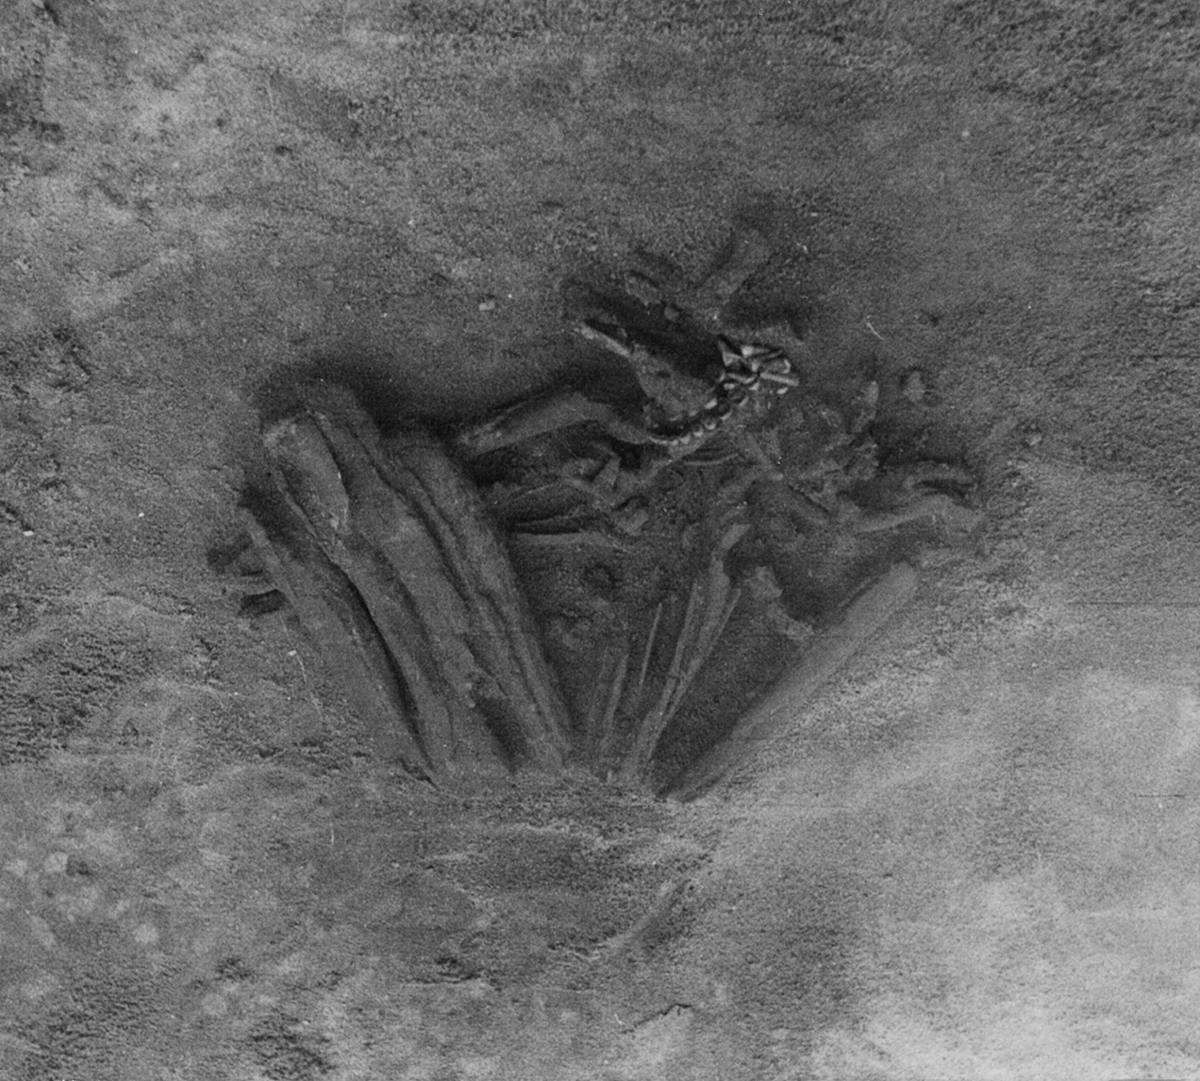 Arkeolog ayeuna yakin yén rorongkong manusa 8,000 taun heubeul ti Portugal mangrupakeun mumi pangkolotna di dunya 2